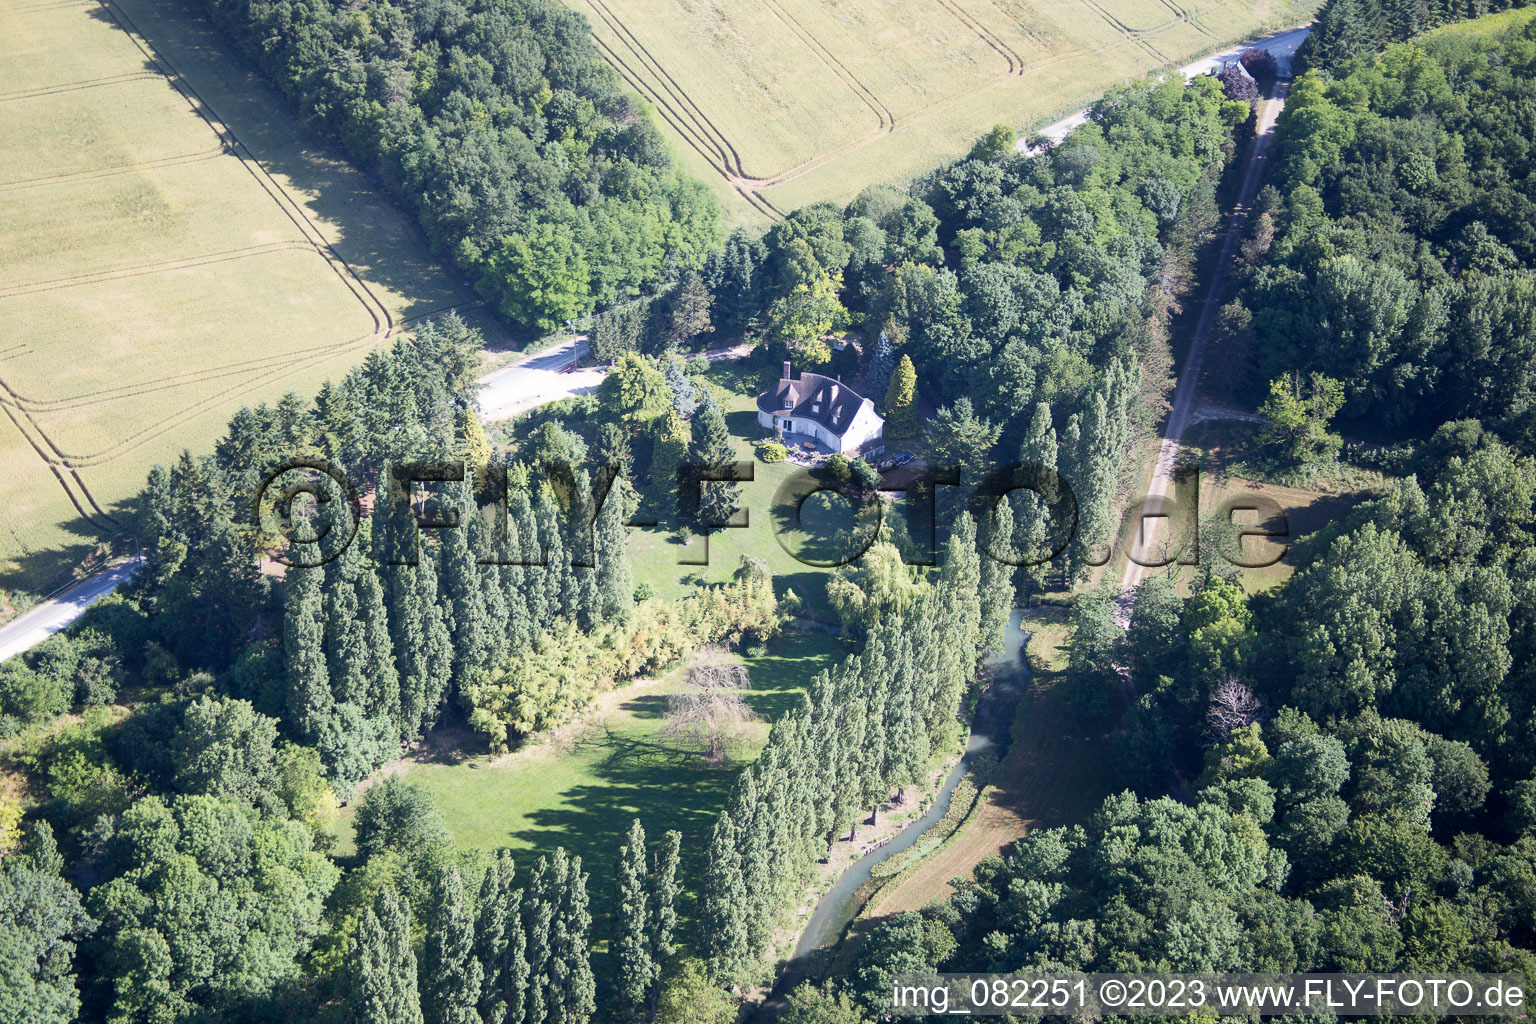 Landes-le-Gaulois im Bundesland Loir-et-Cher, Frankreich aus der Luft betrachtet